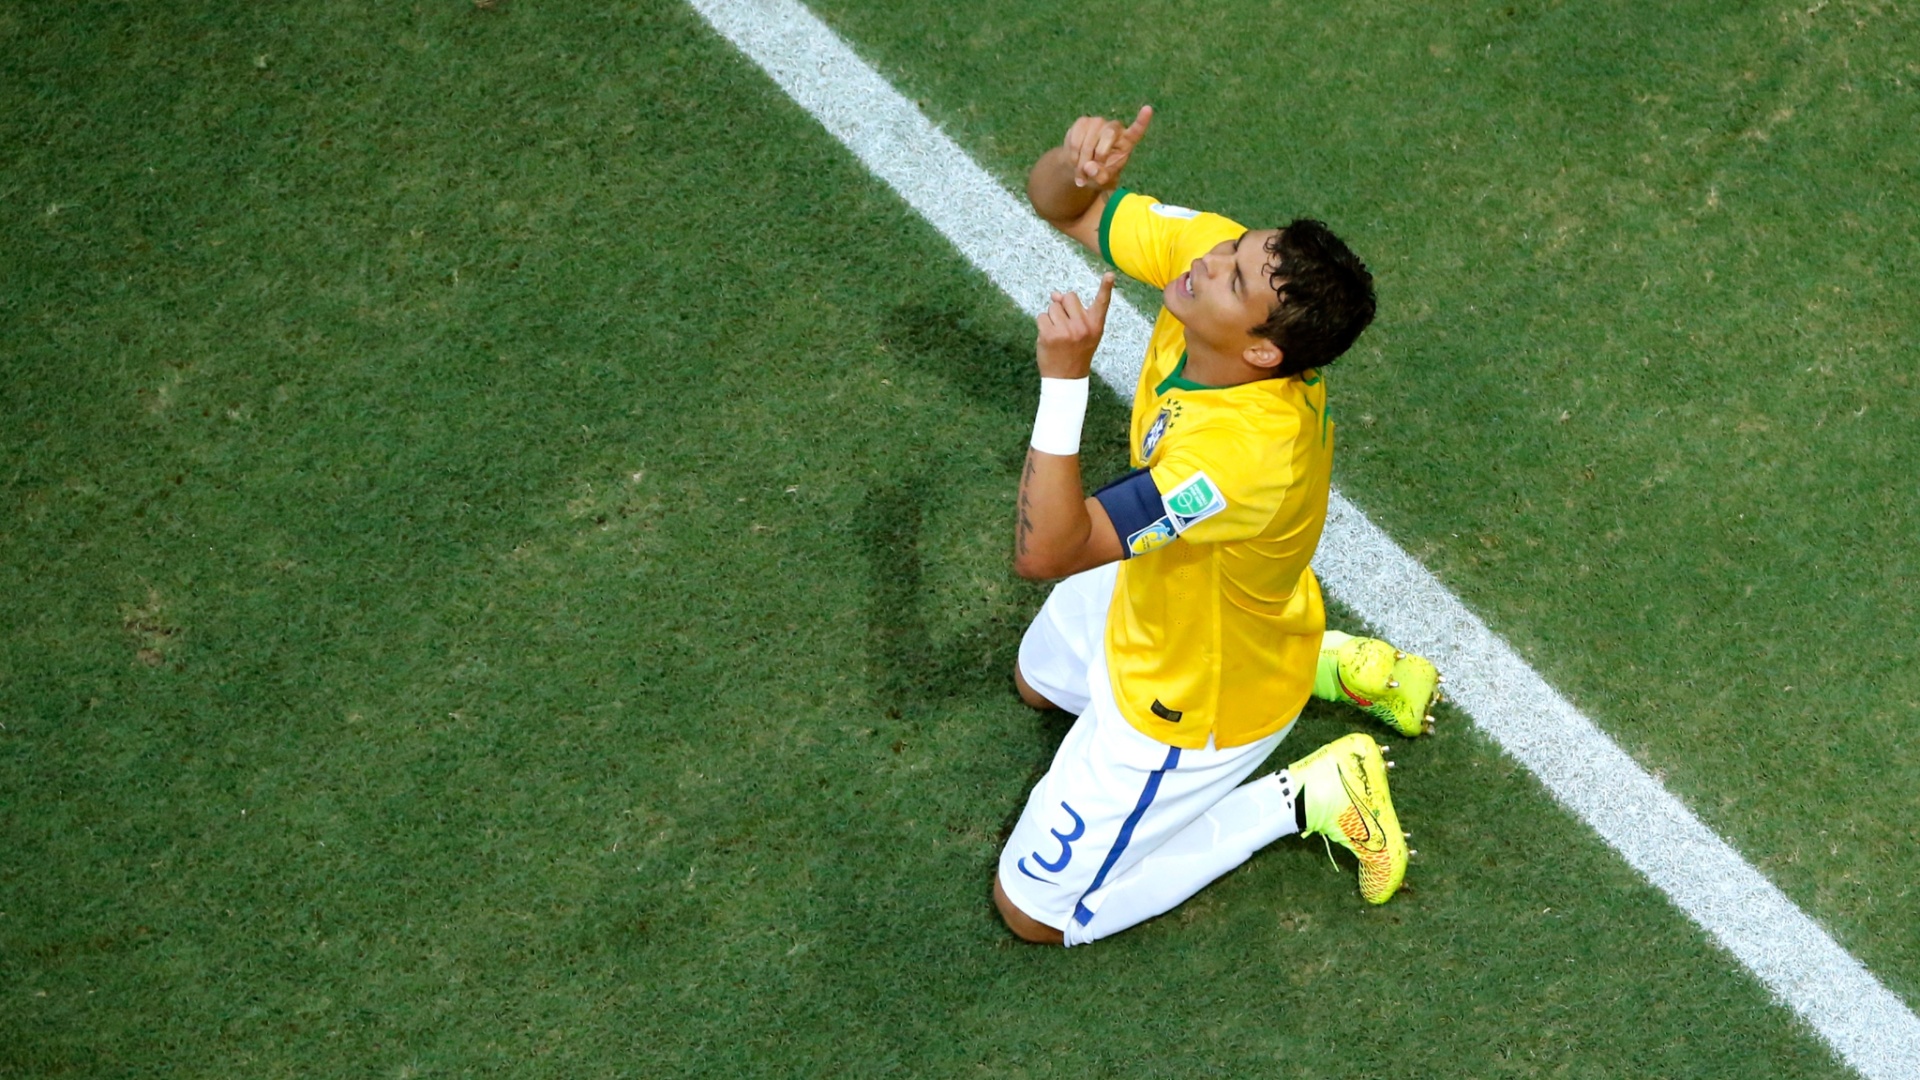 04.jul.2014 - Thiago Silva se ajoelha e agradece o primeiro gol do Brasil, que abriu a vitória por 2 a 1 sobre a Colômbia. Os brasileiros enfrentam agora a Alemanha na semifinal